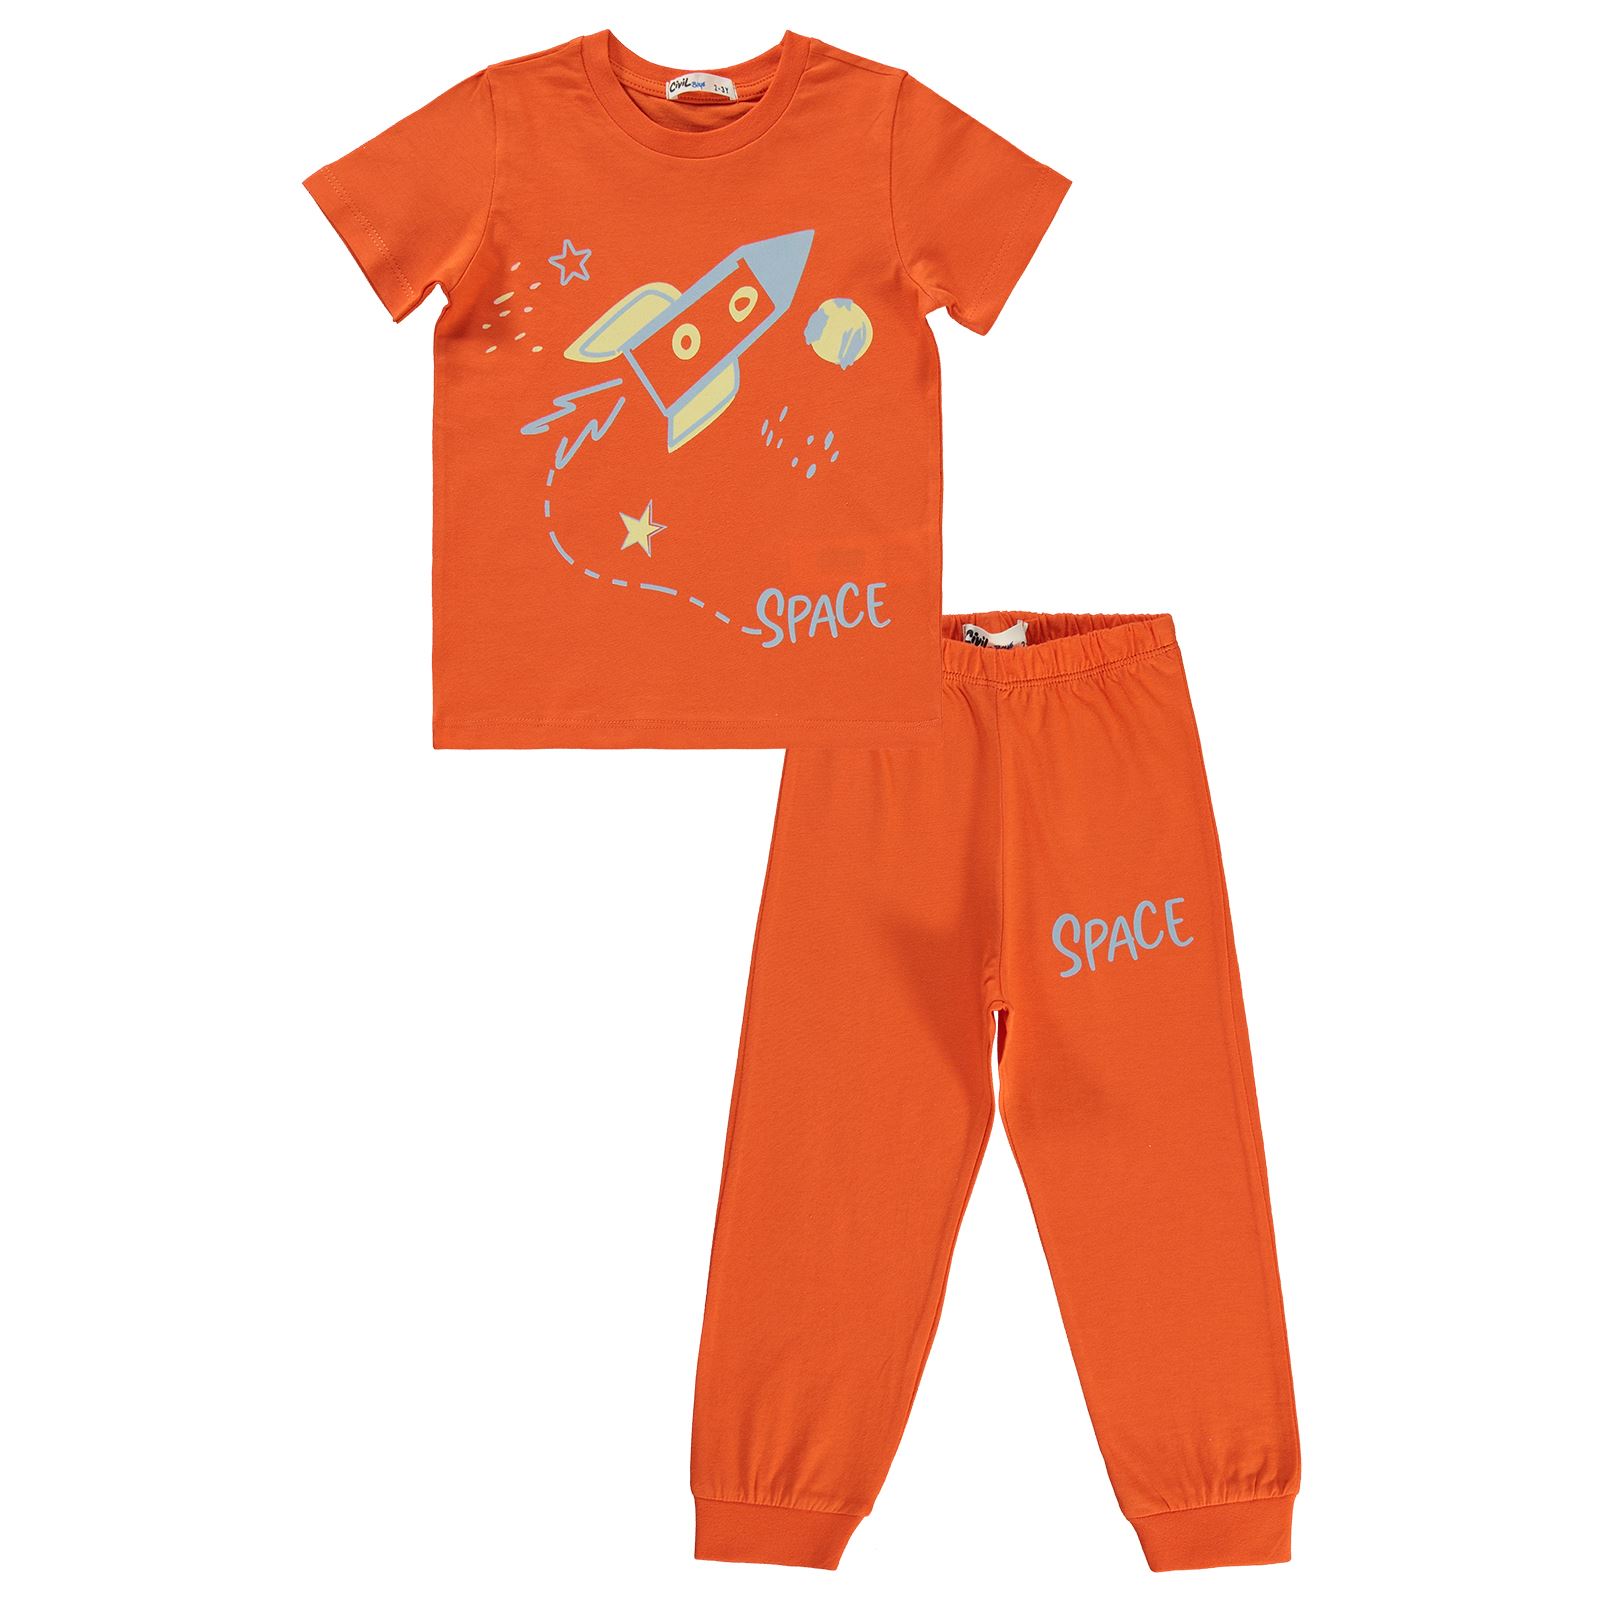 Civil Boys Erkek Çocuk Pijama Takımı 2-5 Yaş Oranj